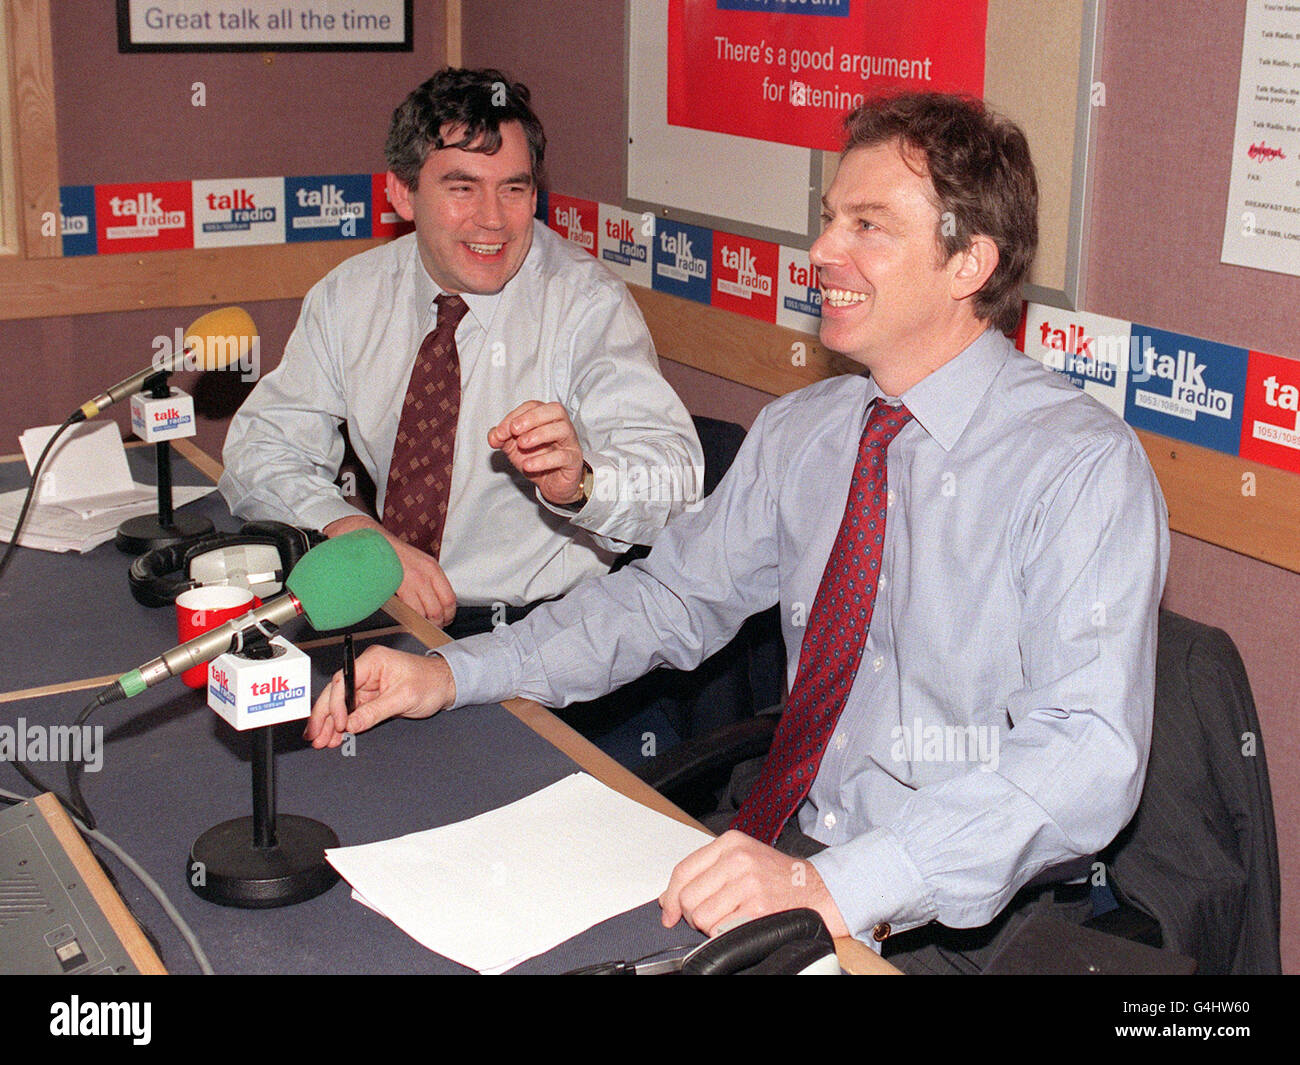 Le Premier ministre Tony Blair (à droite) se joint au Chancelier Gordon Brown pour une radio à la radio à la radio à Londres afin de défendre et de promouvoir leur récent budget.Il s'agissait de leur premier appel téléphonique commun et M. Blair a prasé M. Brown pour avoir géré l'économie britannique « brillamment ». Banque D'Images